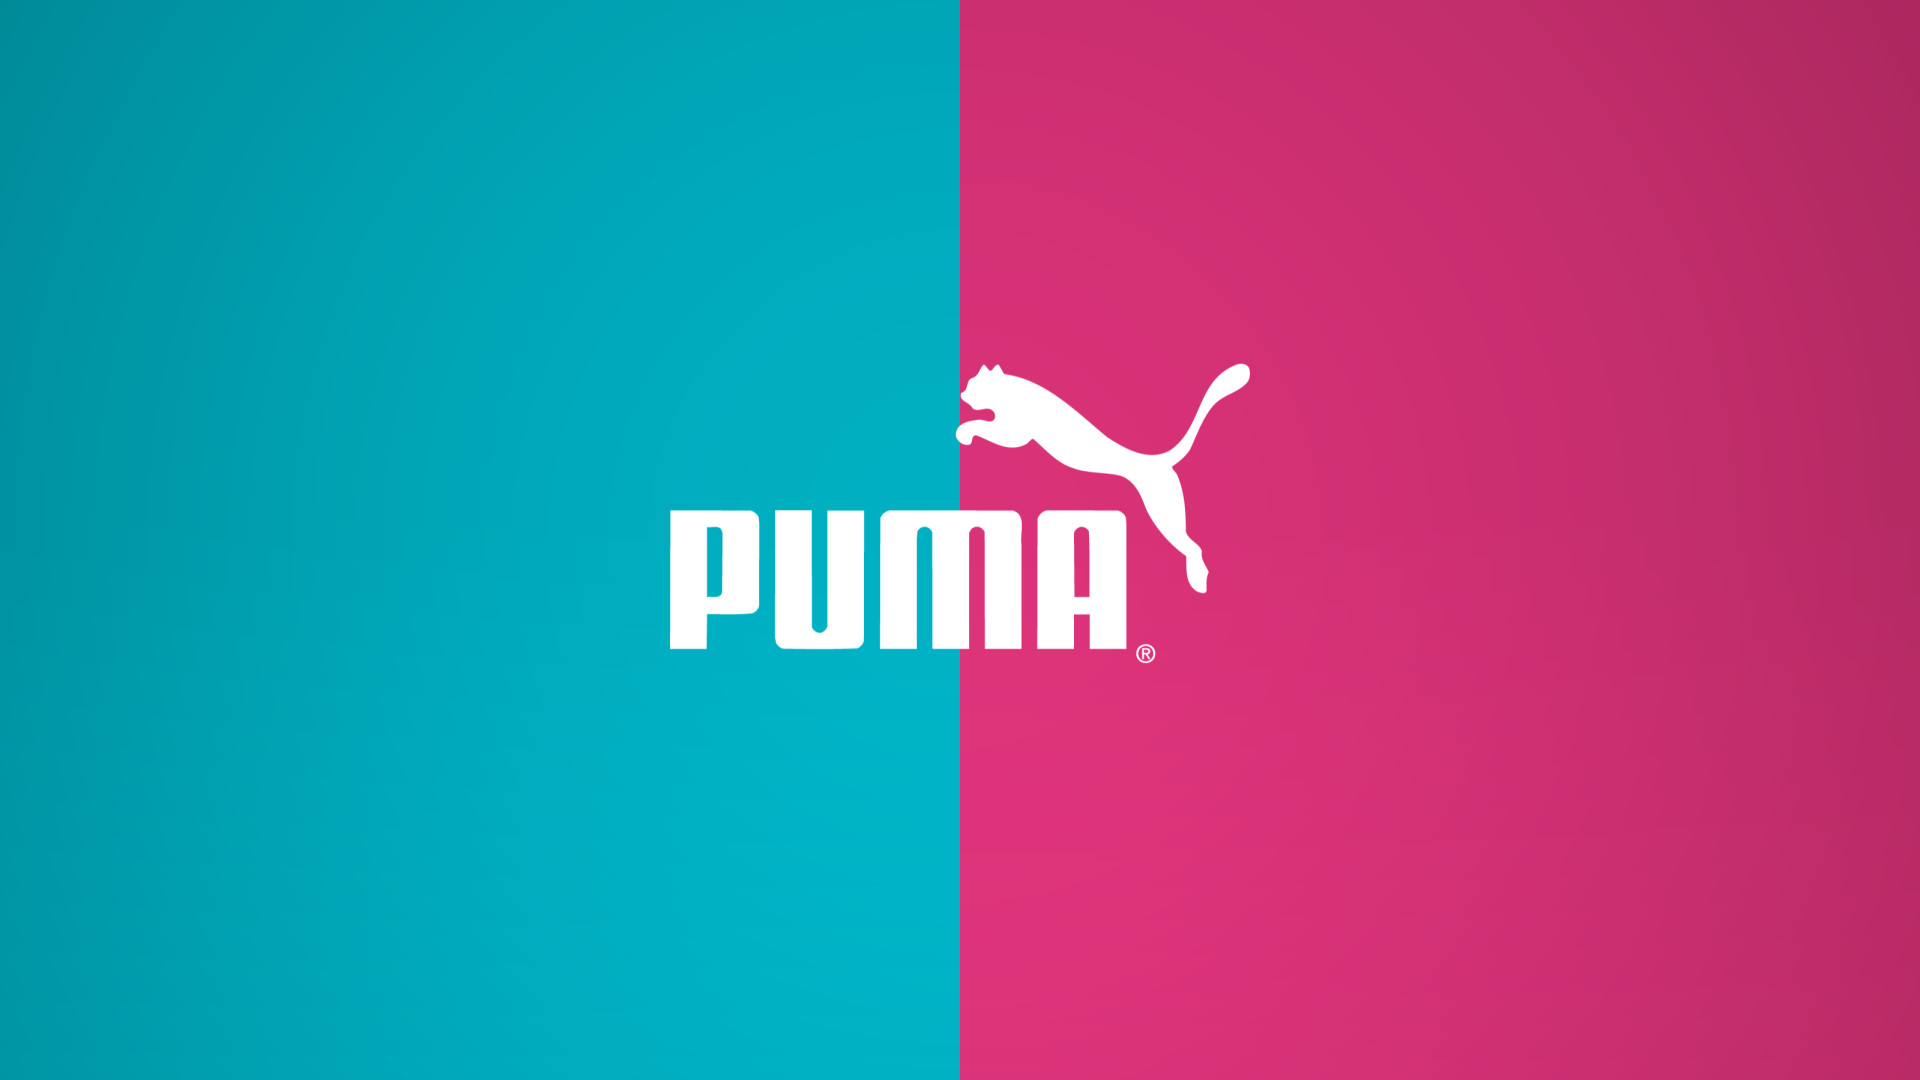 puma wallpaper hd download